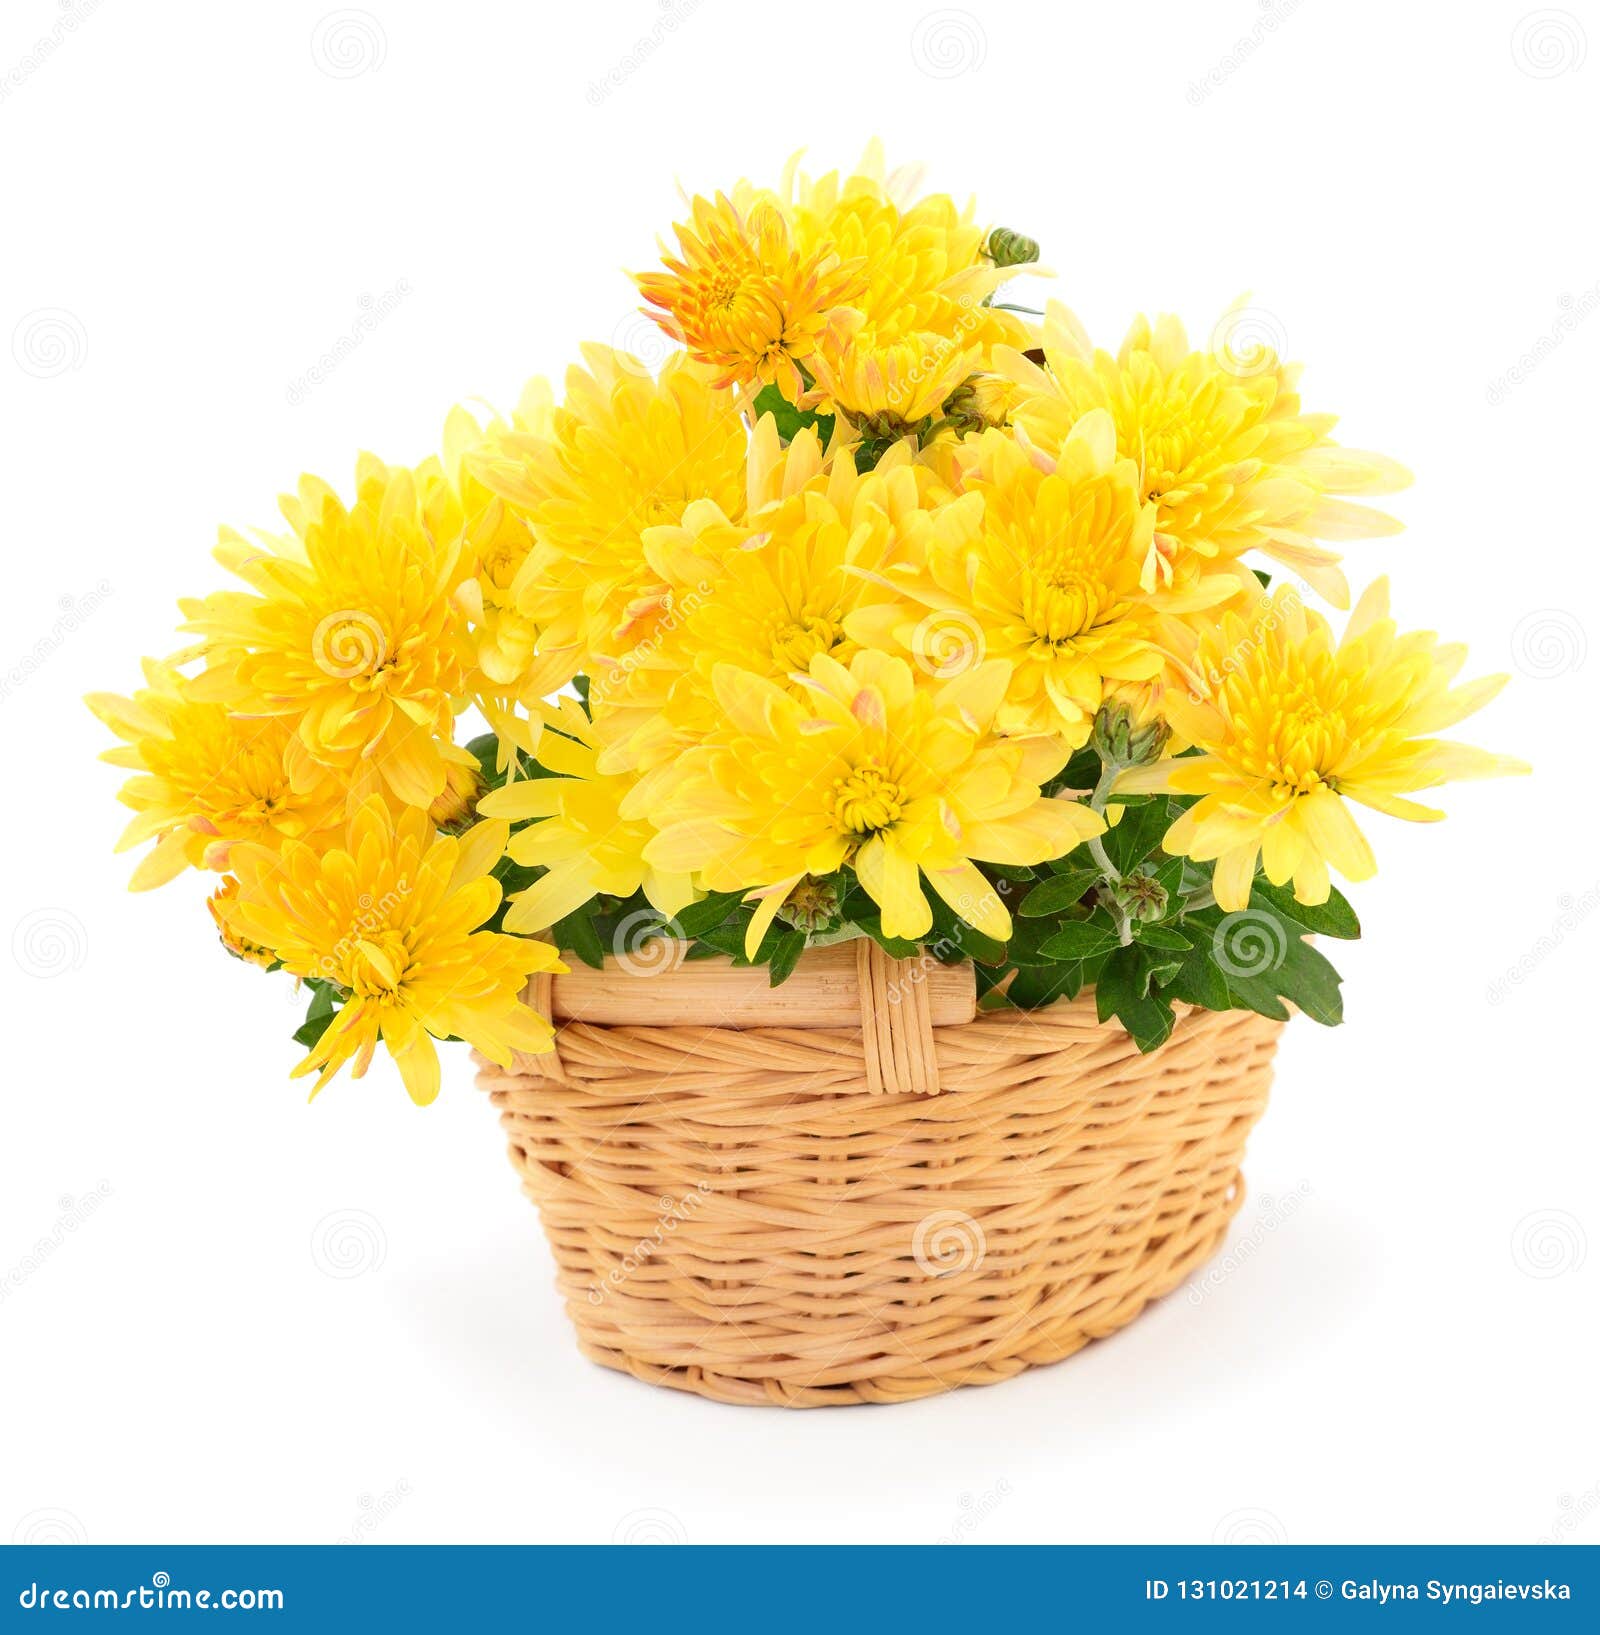 Chrysanthemum Flowers In Basket Stock Photo Image Of Flower Leaf 131021214